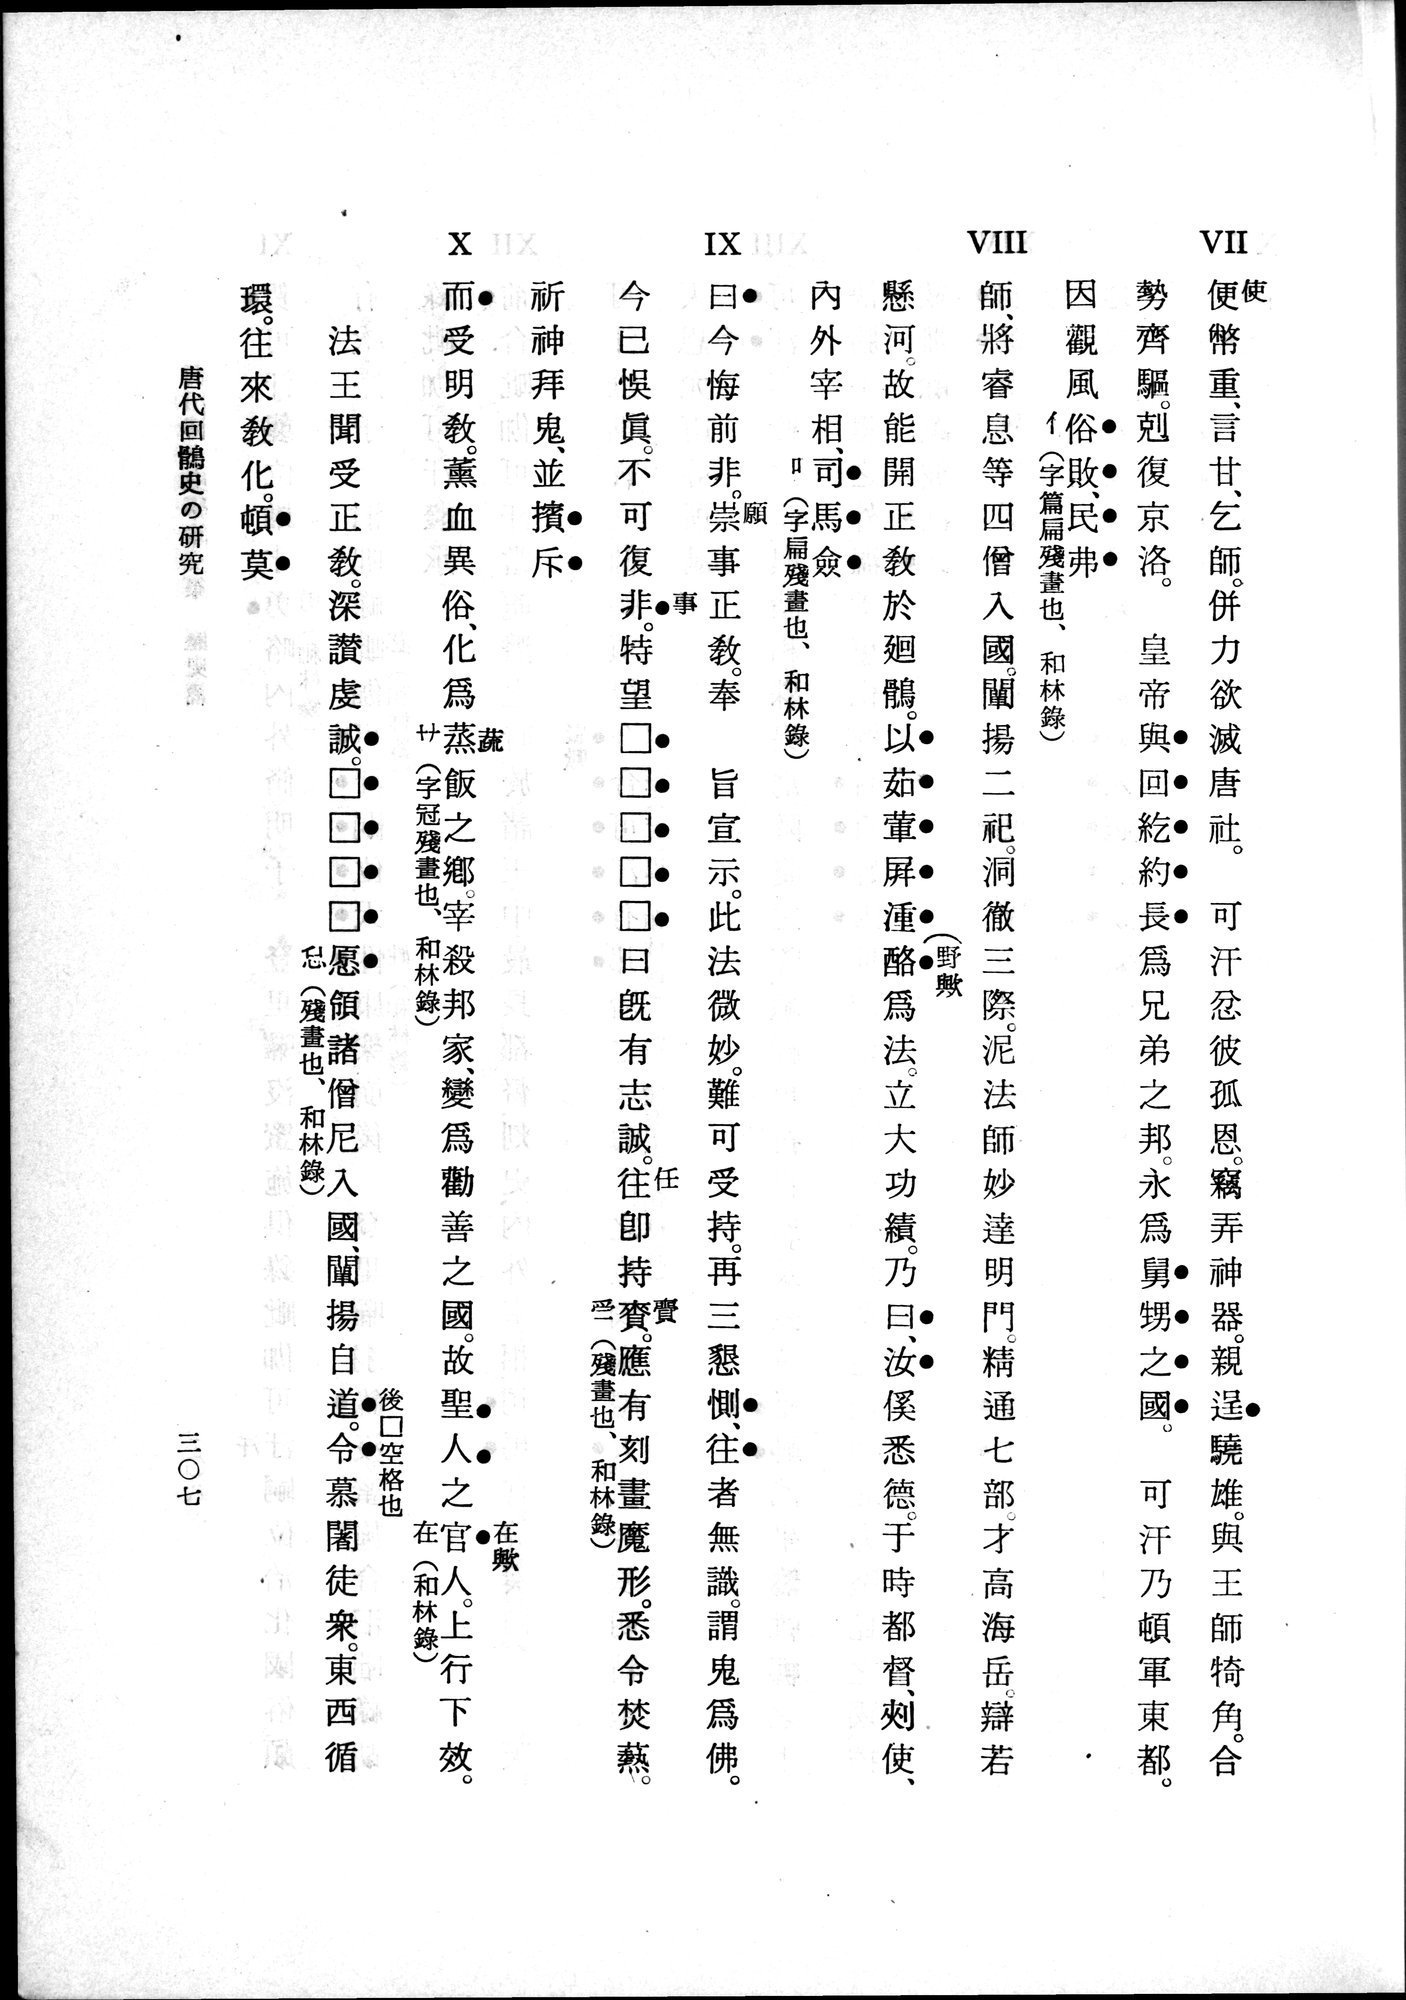 羽田博士史学論文集 : vol.1 / 345 ページ（白黒高解像度画像）